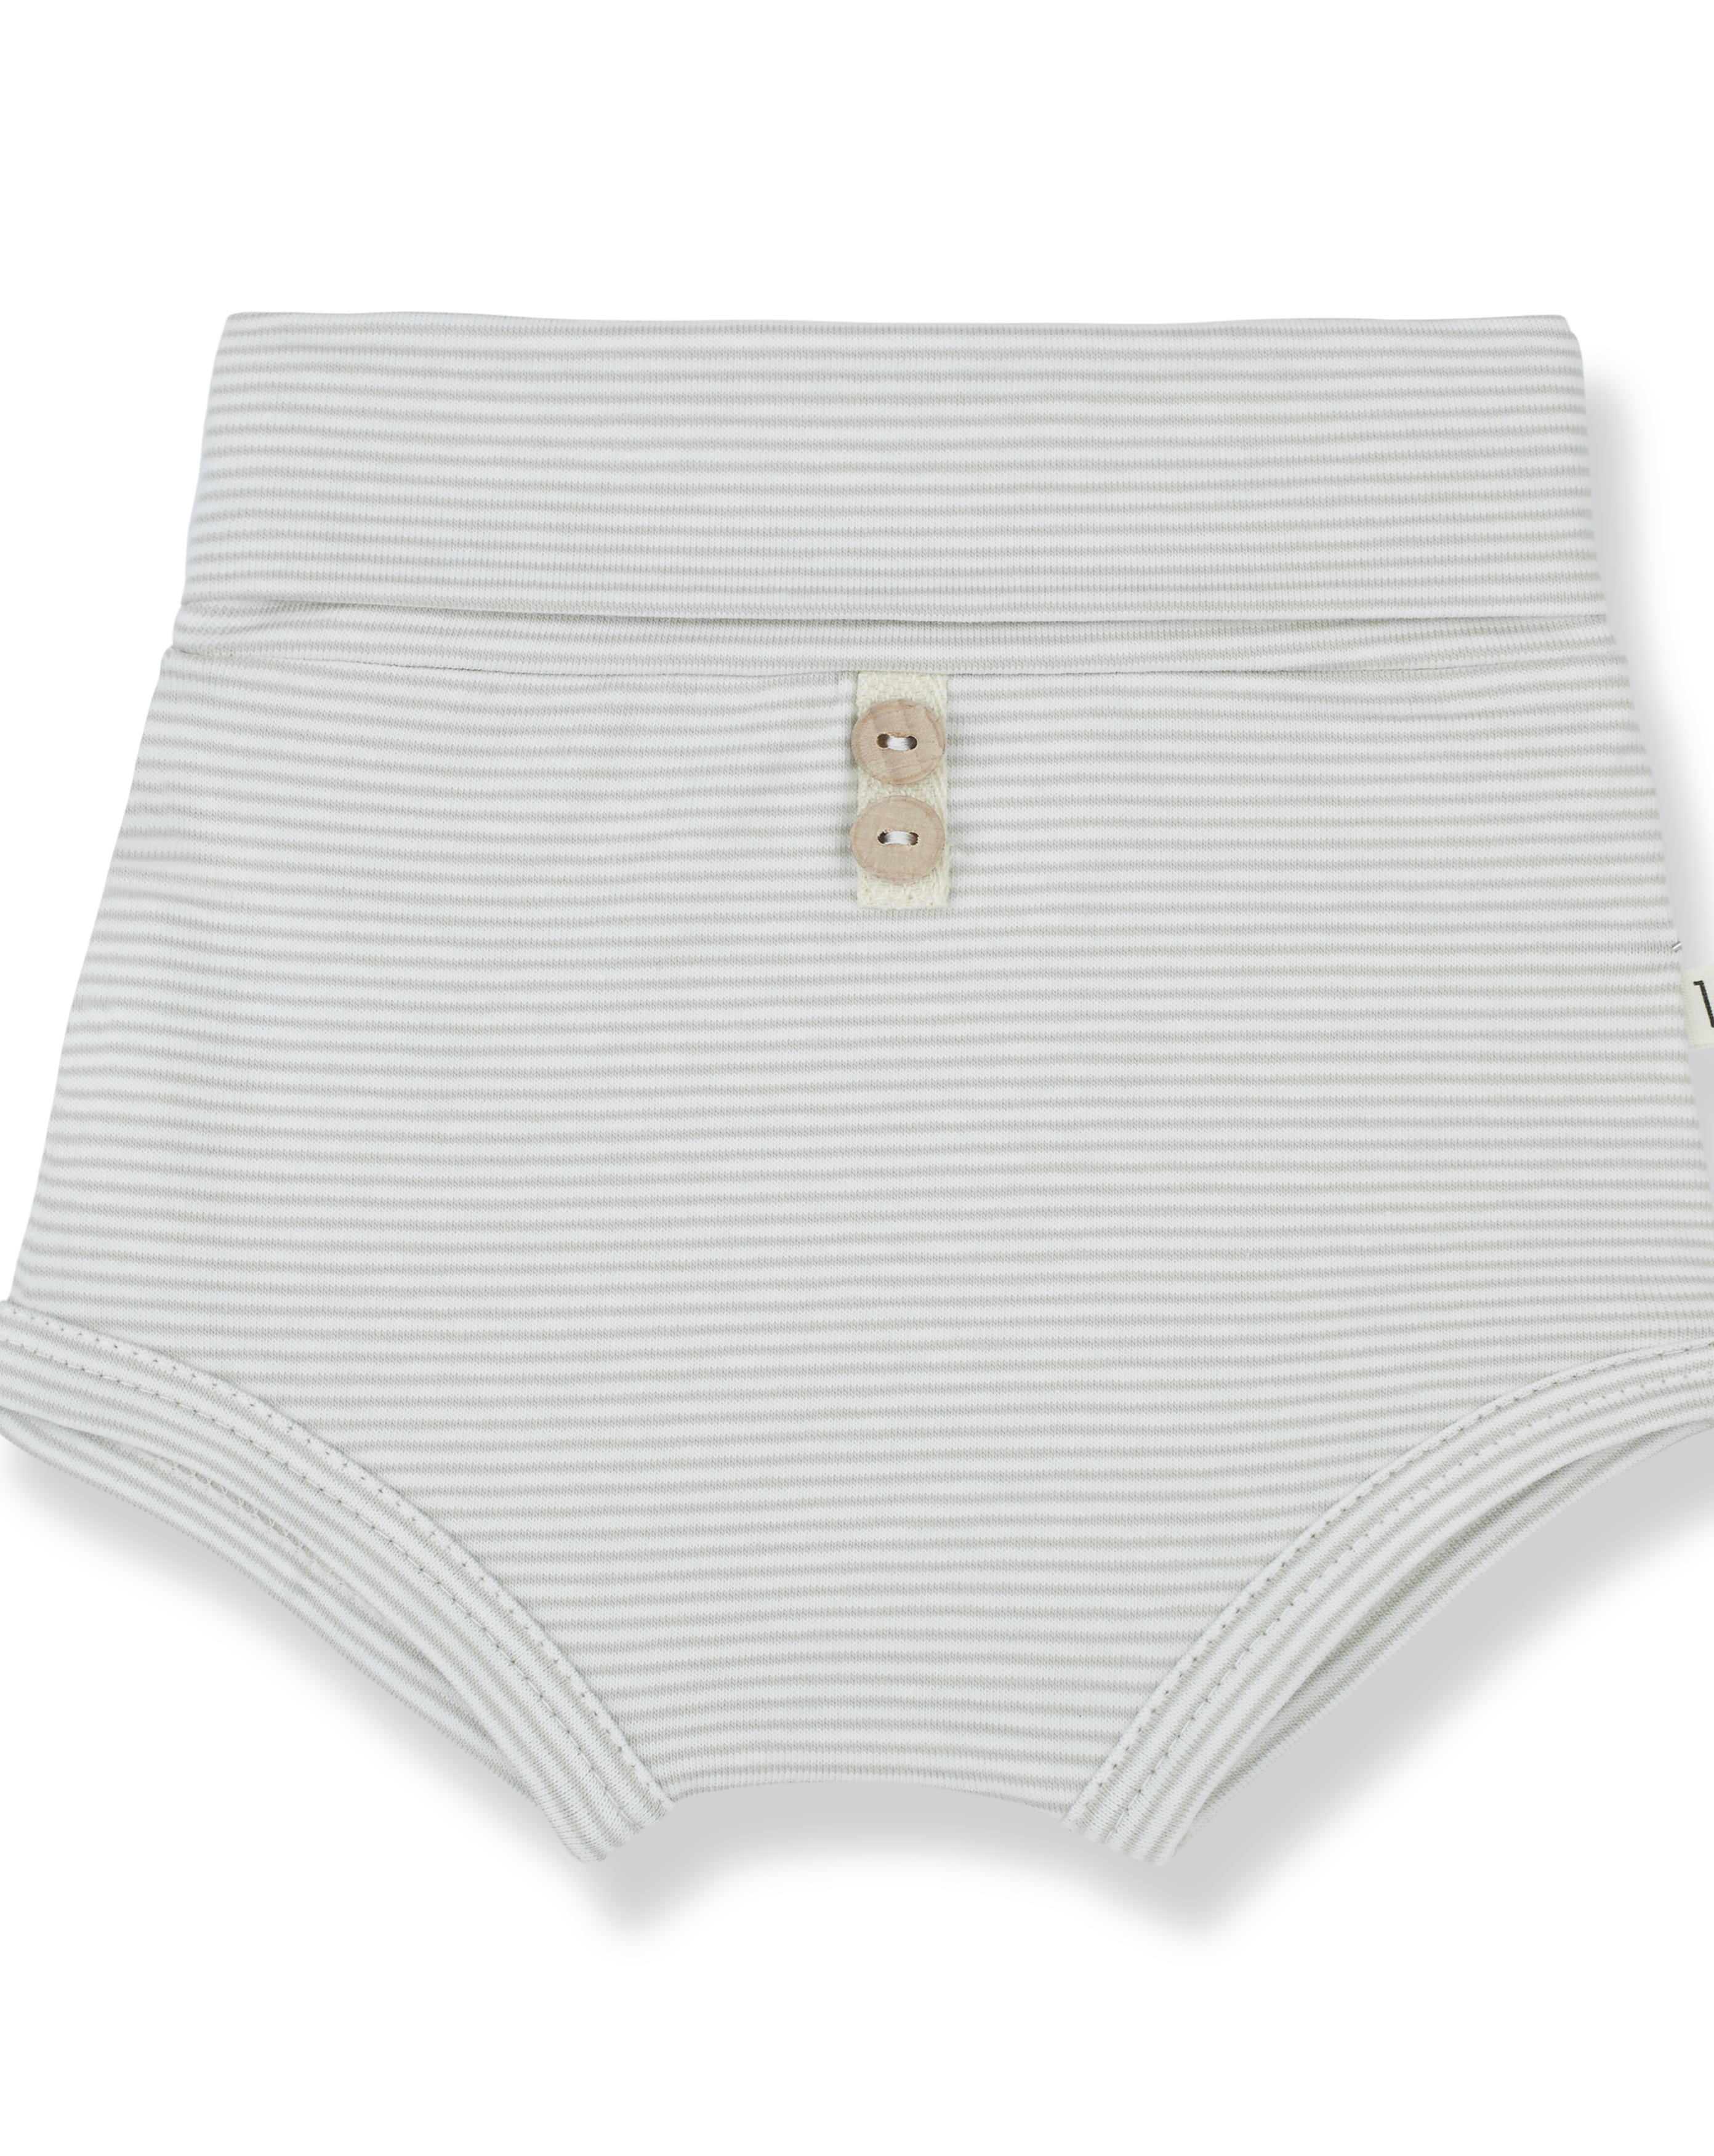 Sol Long Sleeve Top and Kira Bloomer Shorts - Set